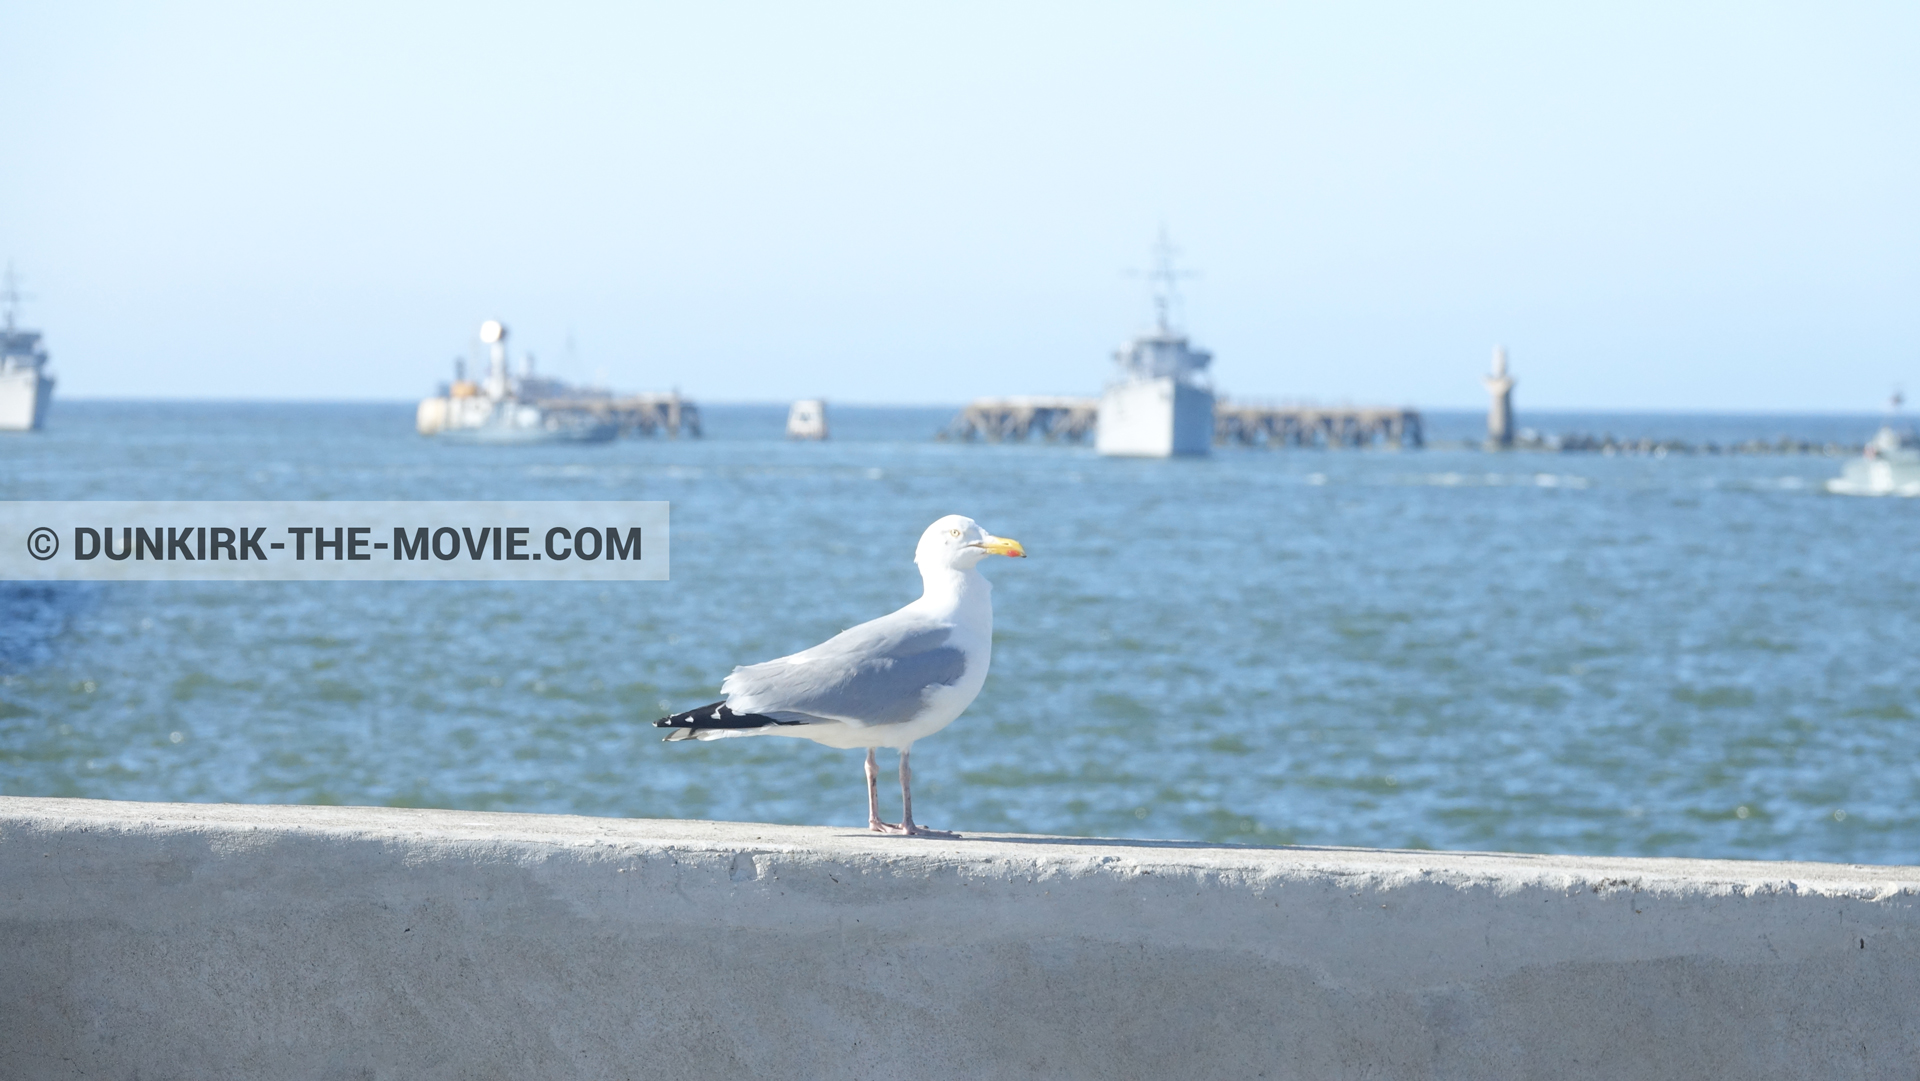 Fotos con barco, cielo azul, mares calma,  durante el rodaje de la película Dunkerque de Nolan